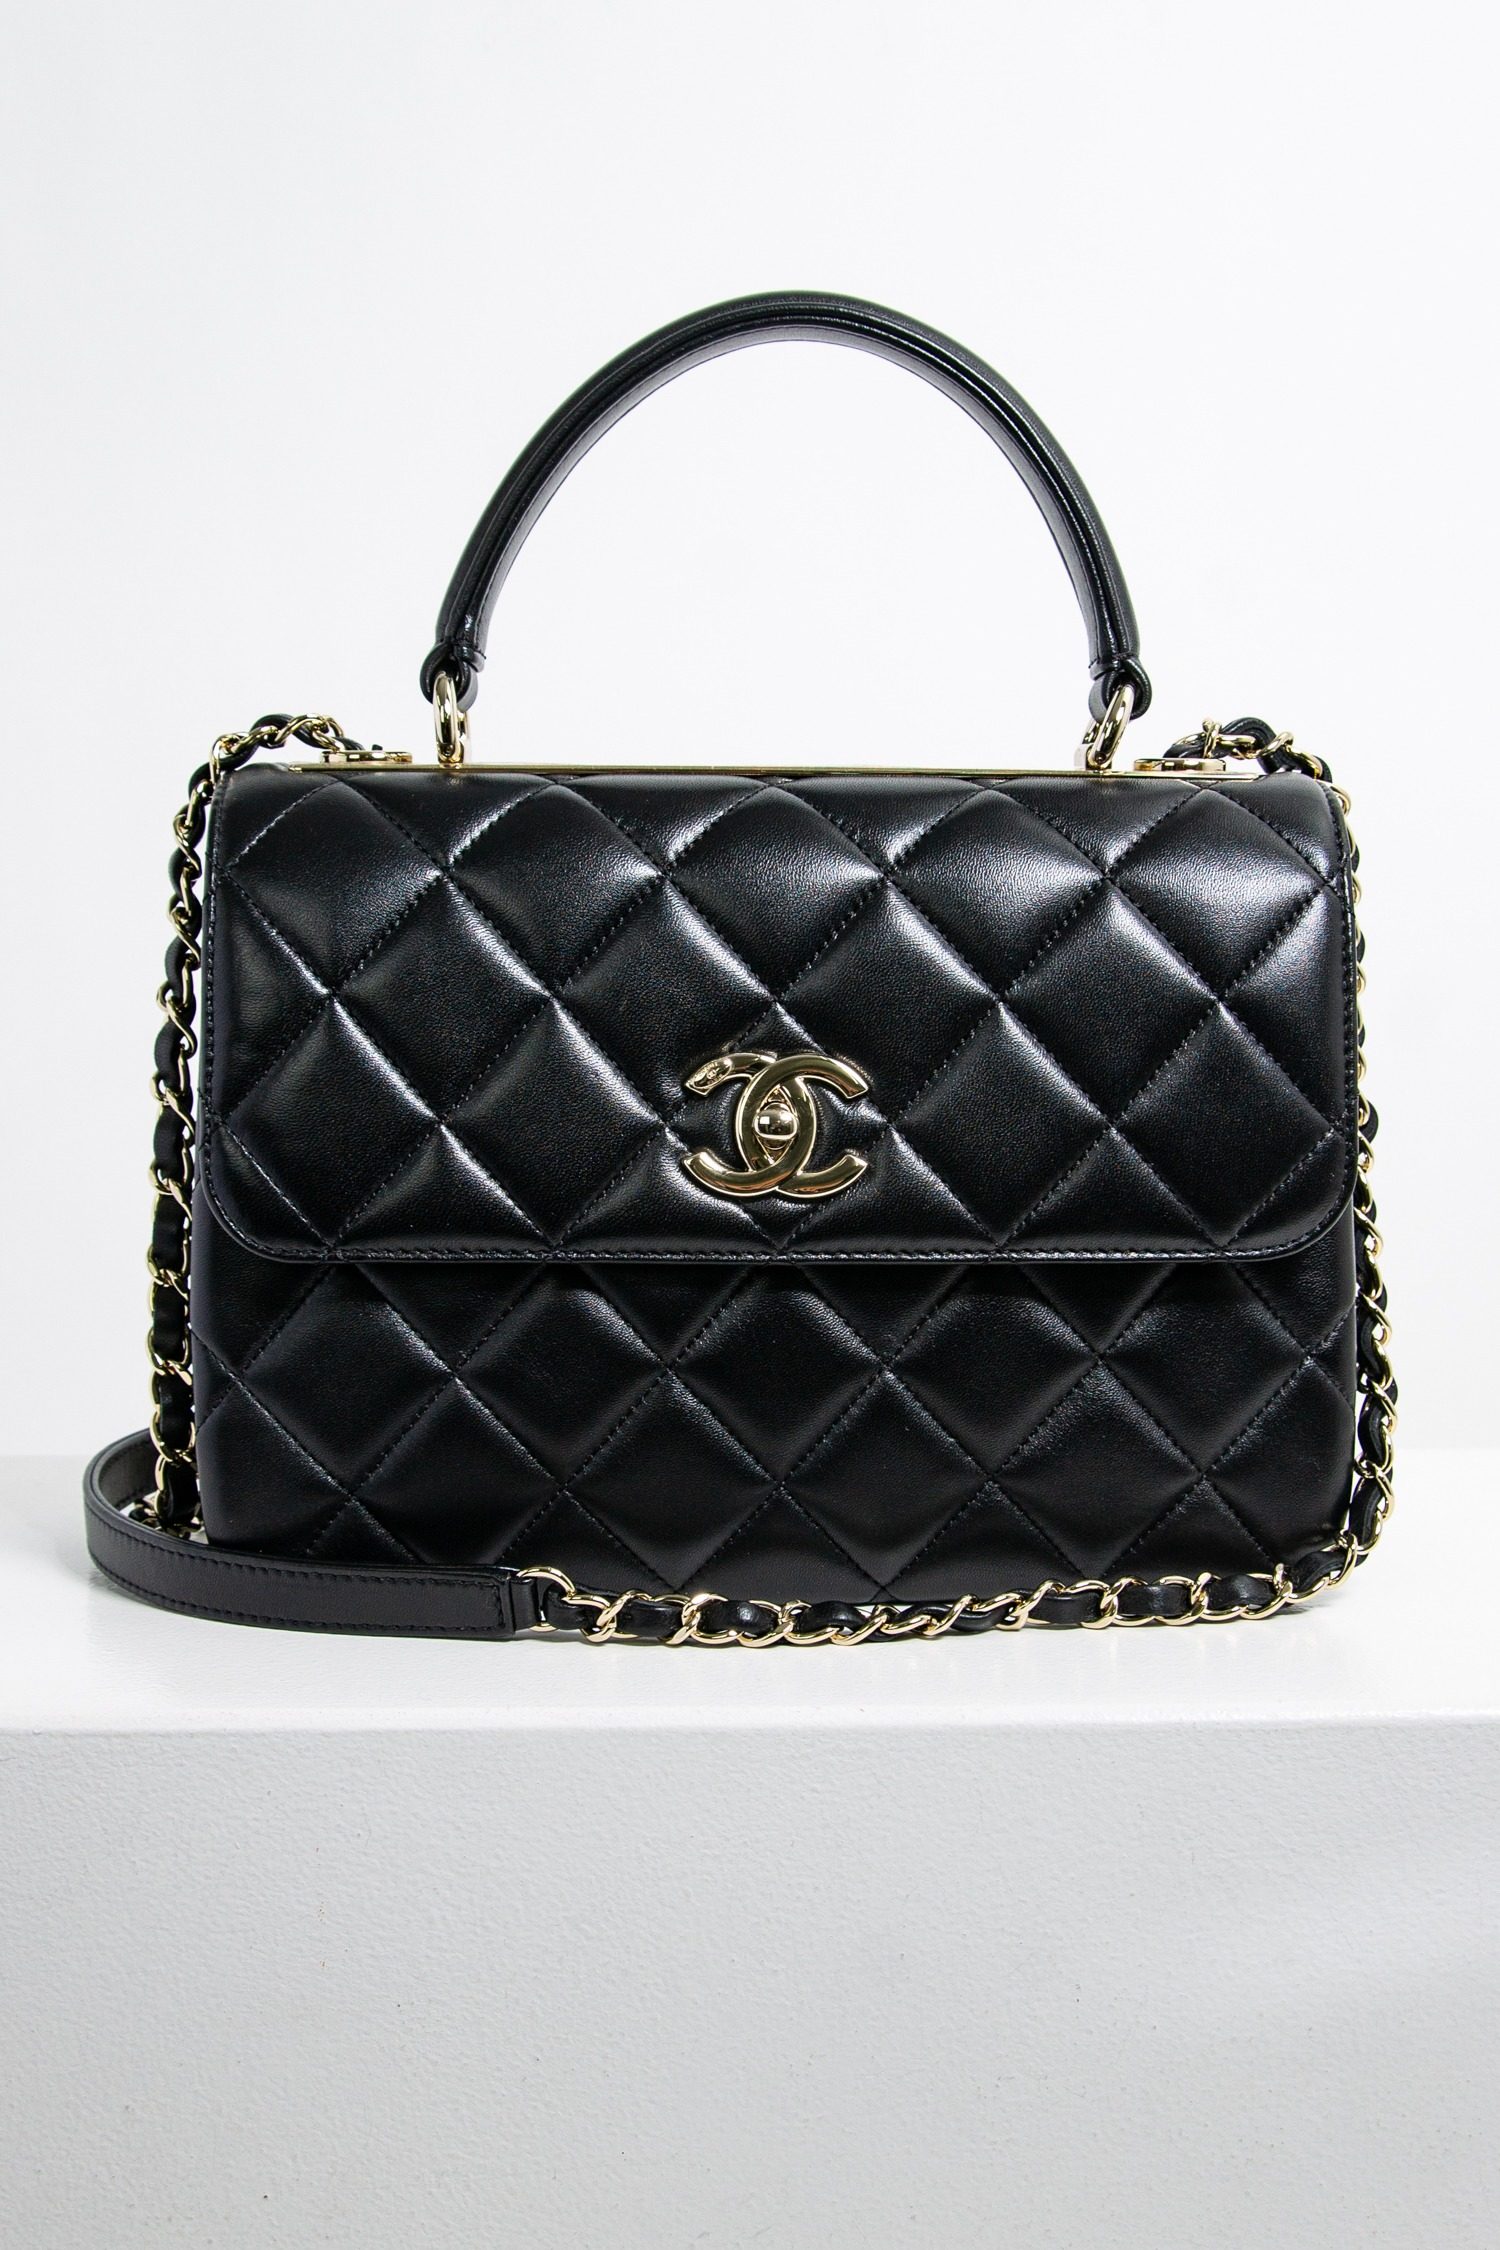 Chanel "Flap Bag mit Top Handle" in schwarz